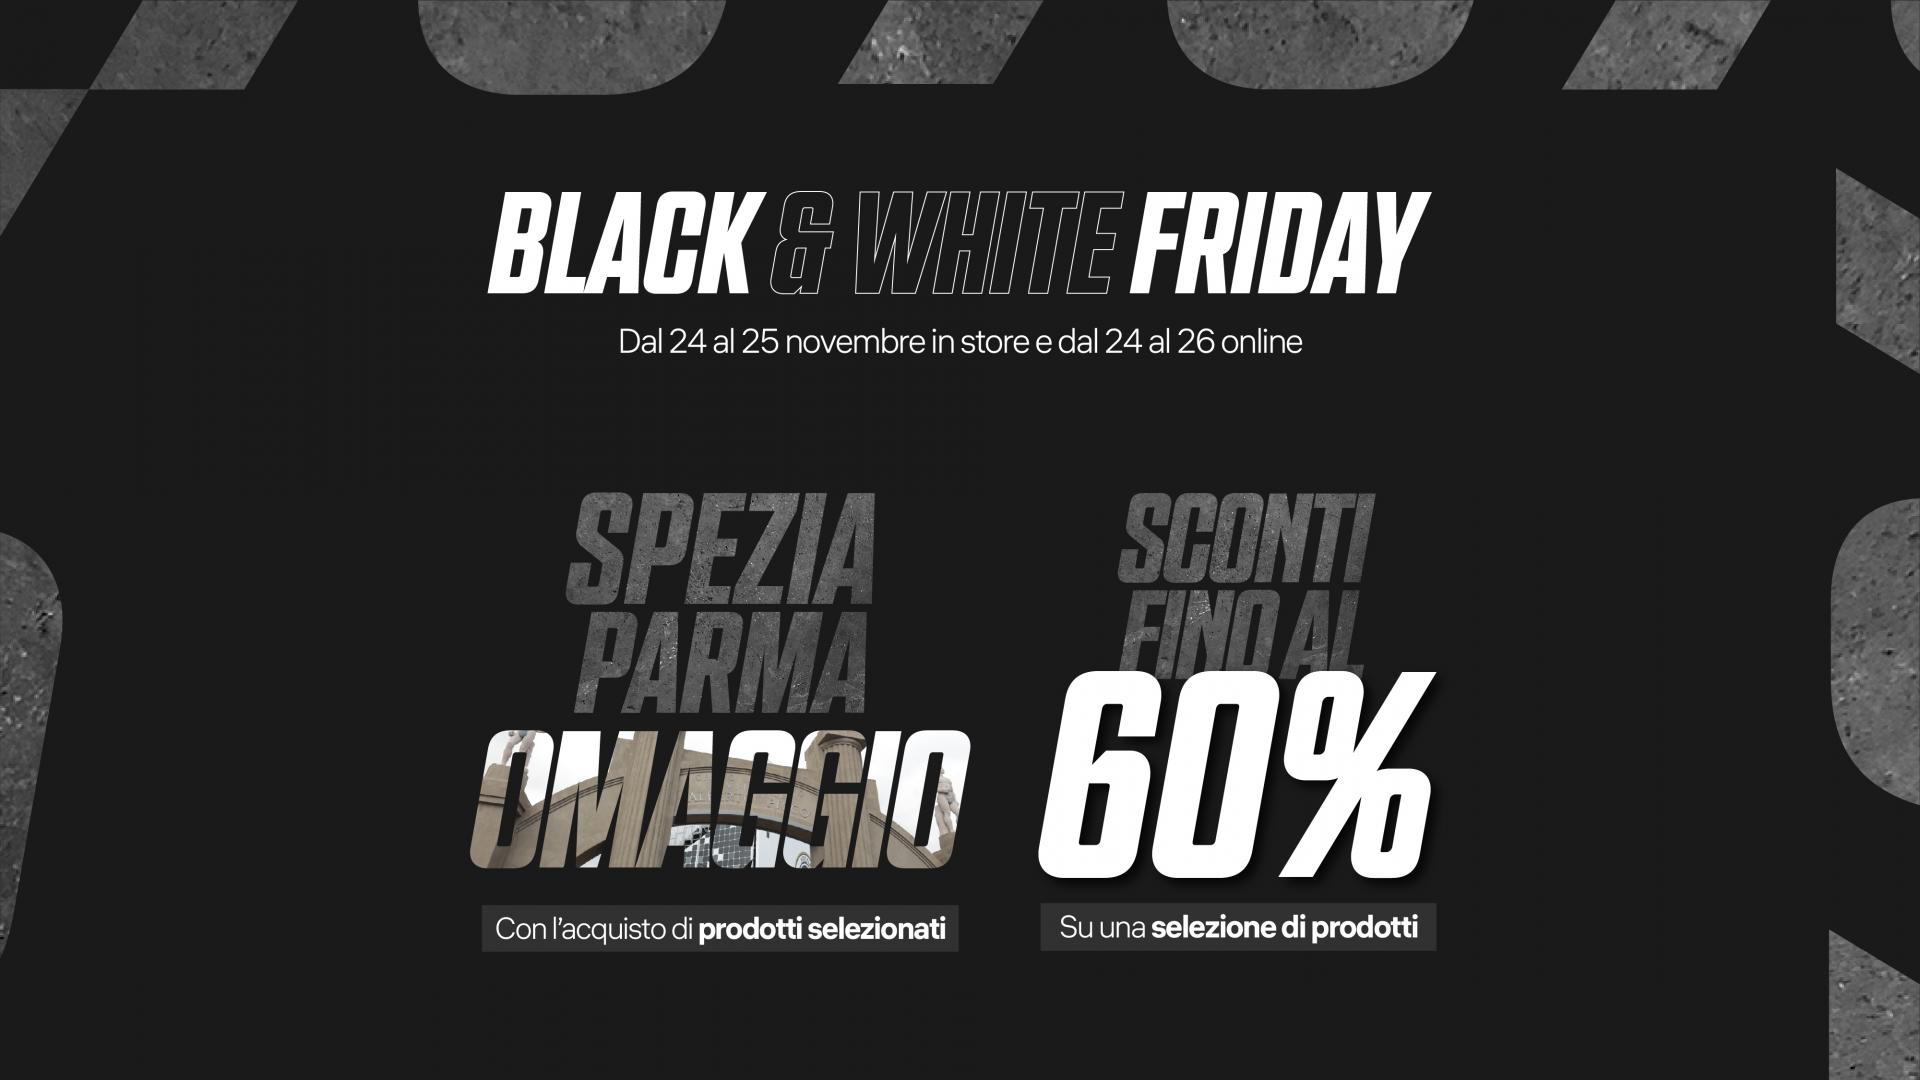 Black & White Friday: imperdibili sconti e promo speciale per Spezia-Parma